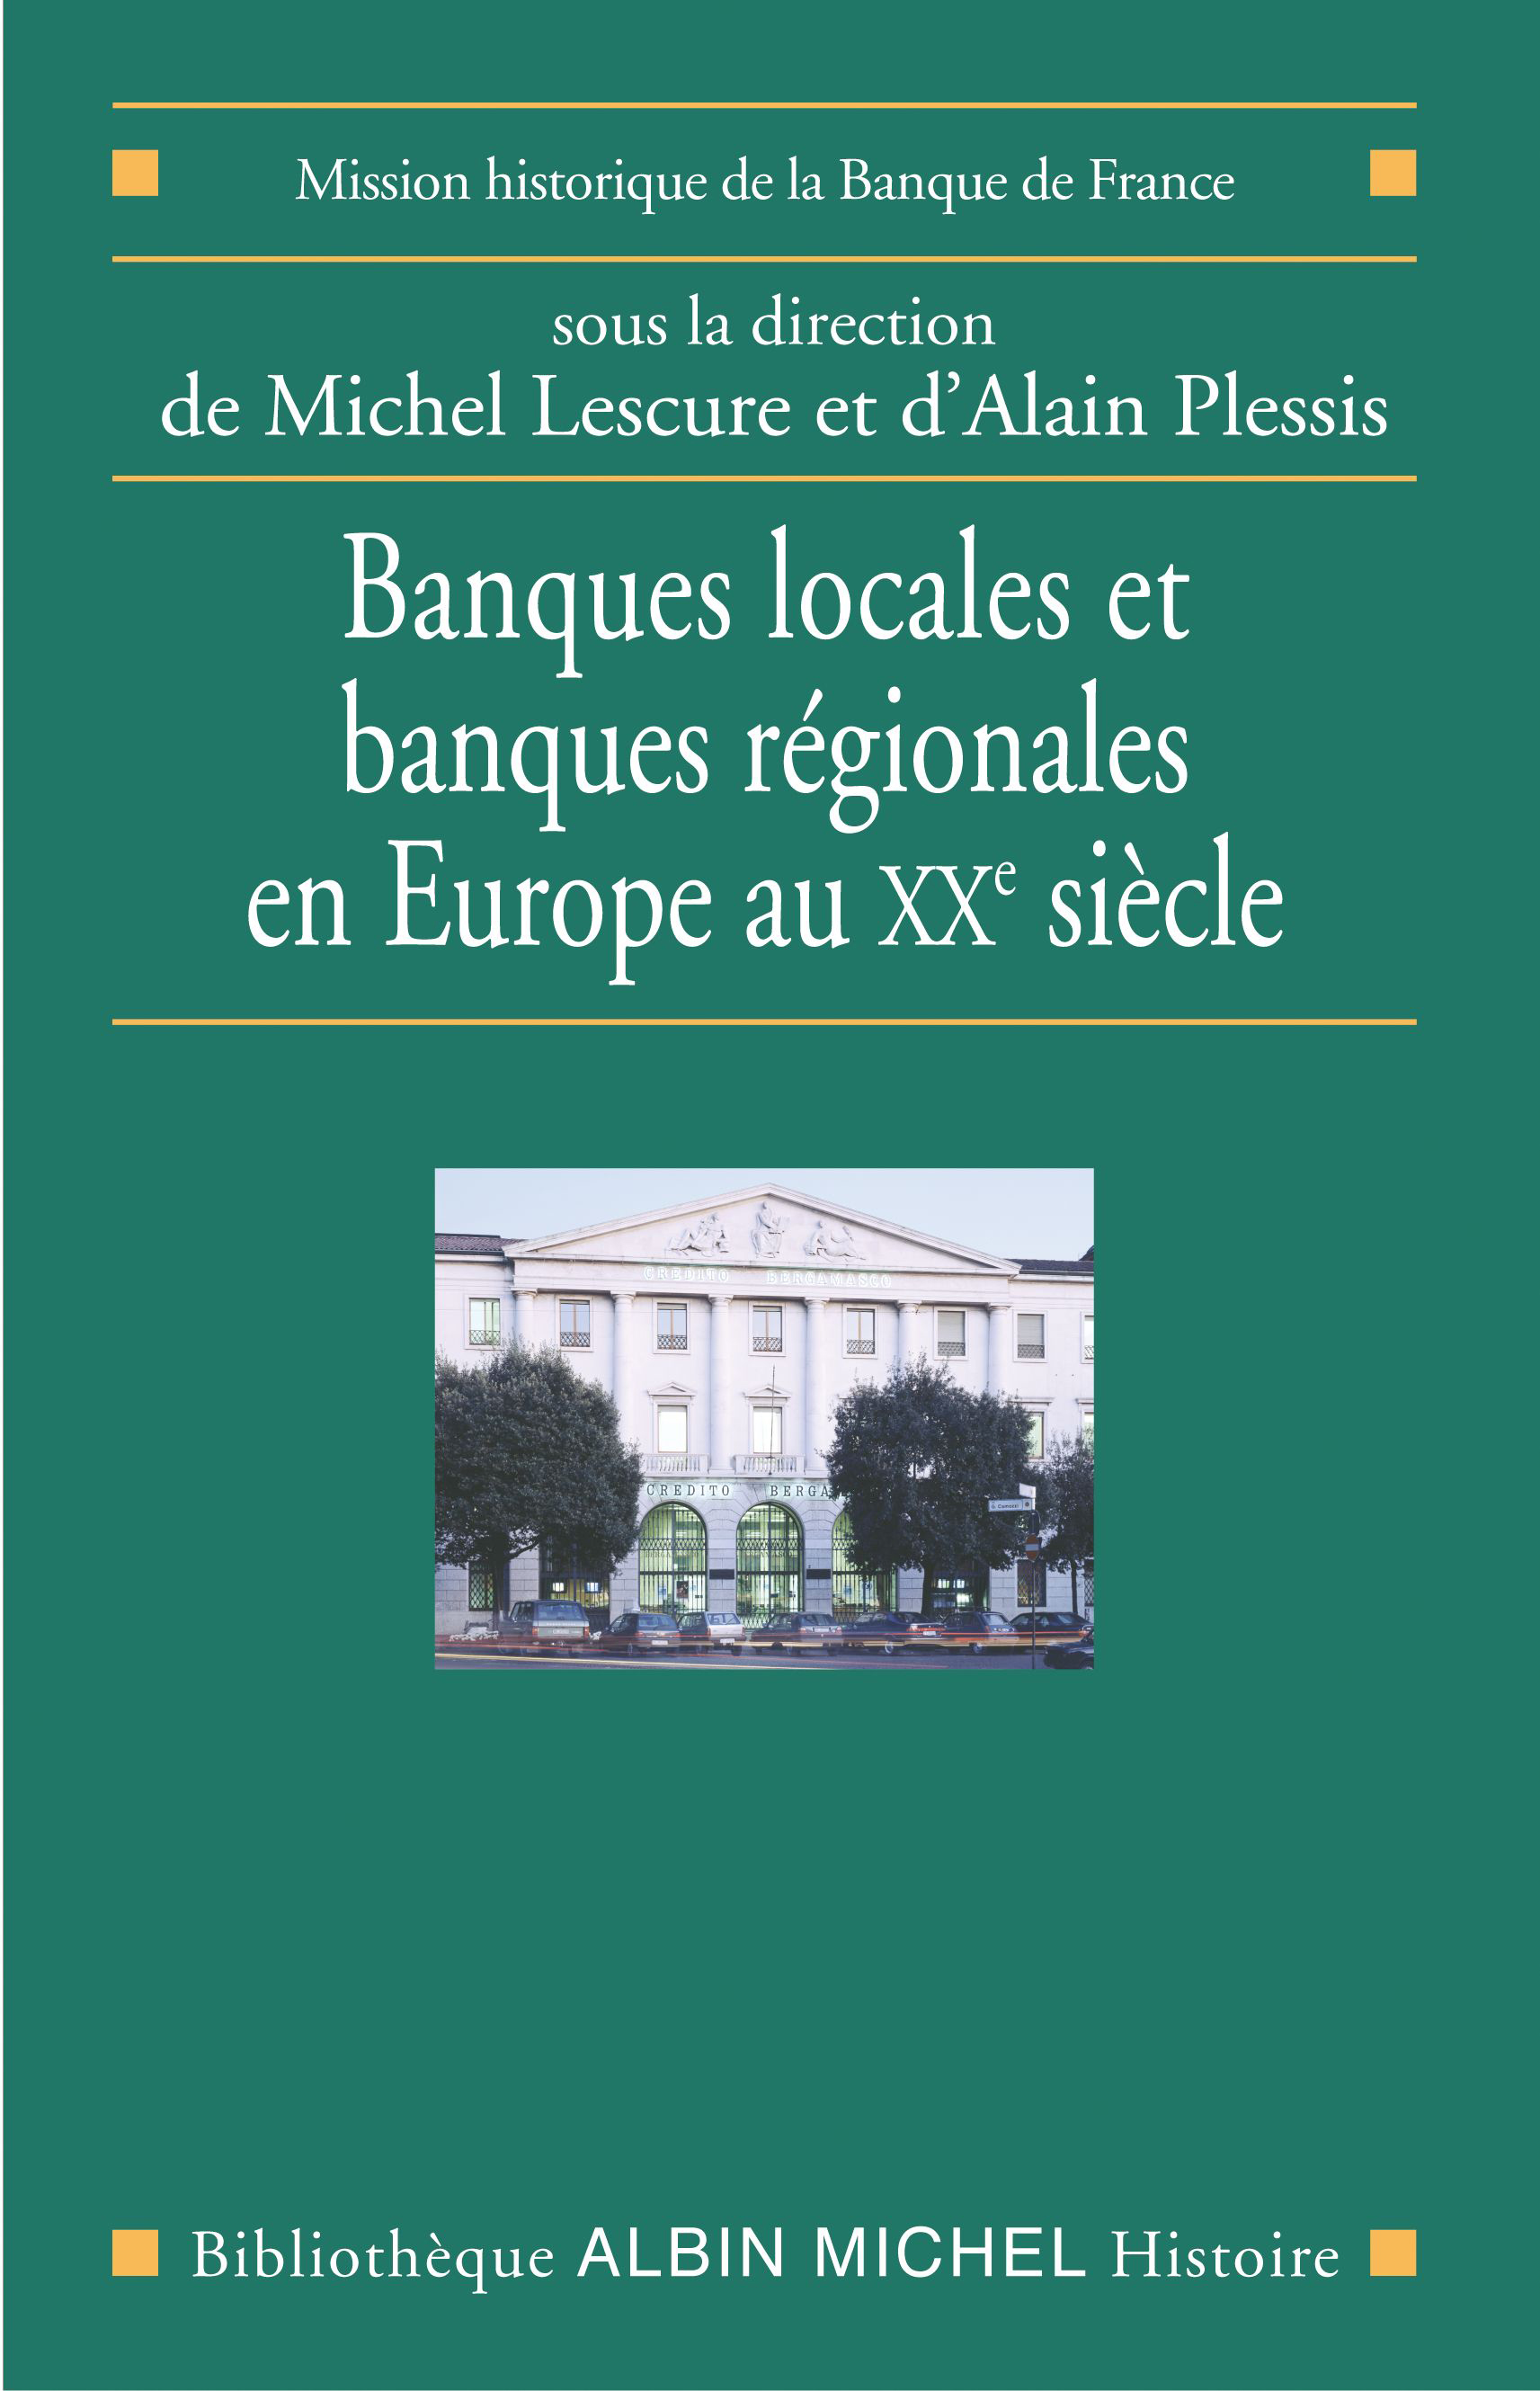 Couverture du livre Banques locales et banques régionales en Europe au XXe siècle